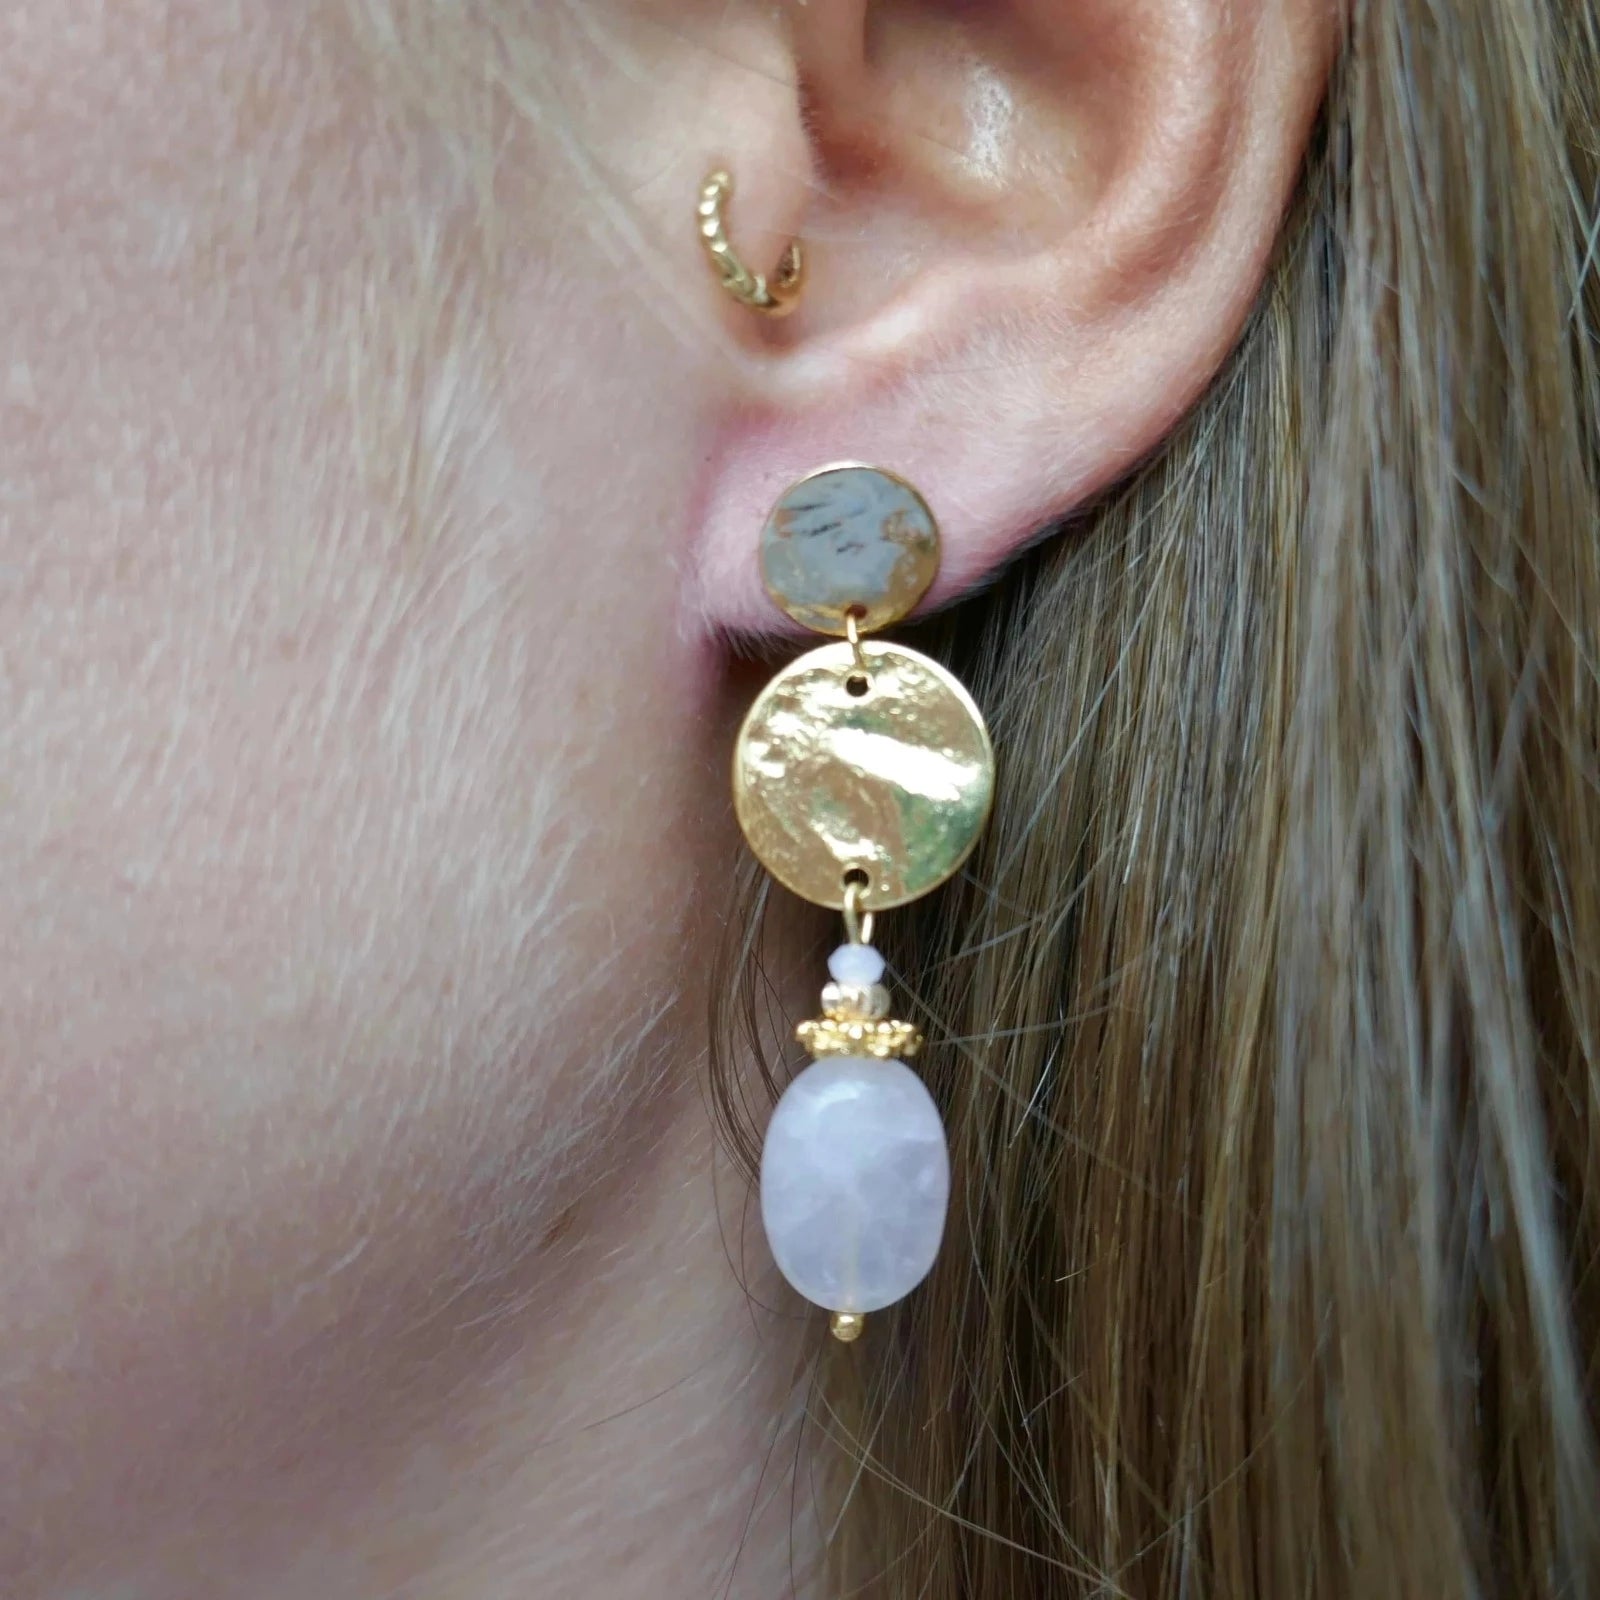 Boucles d'oreilles : notre sélection tendance - Marie Claire